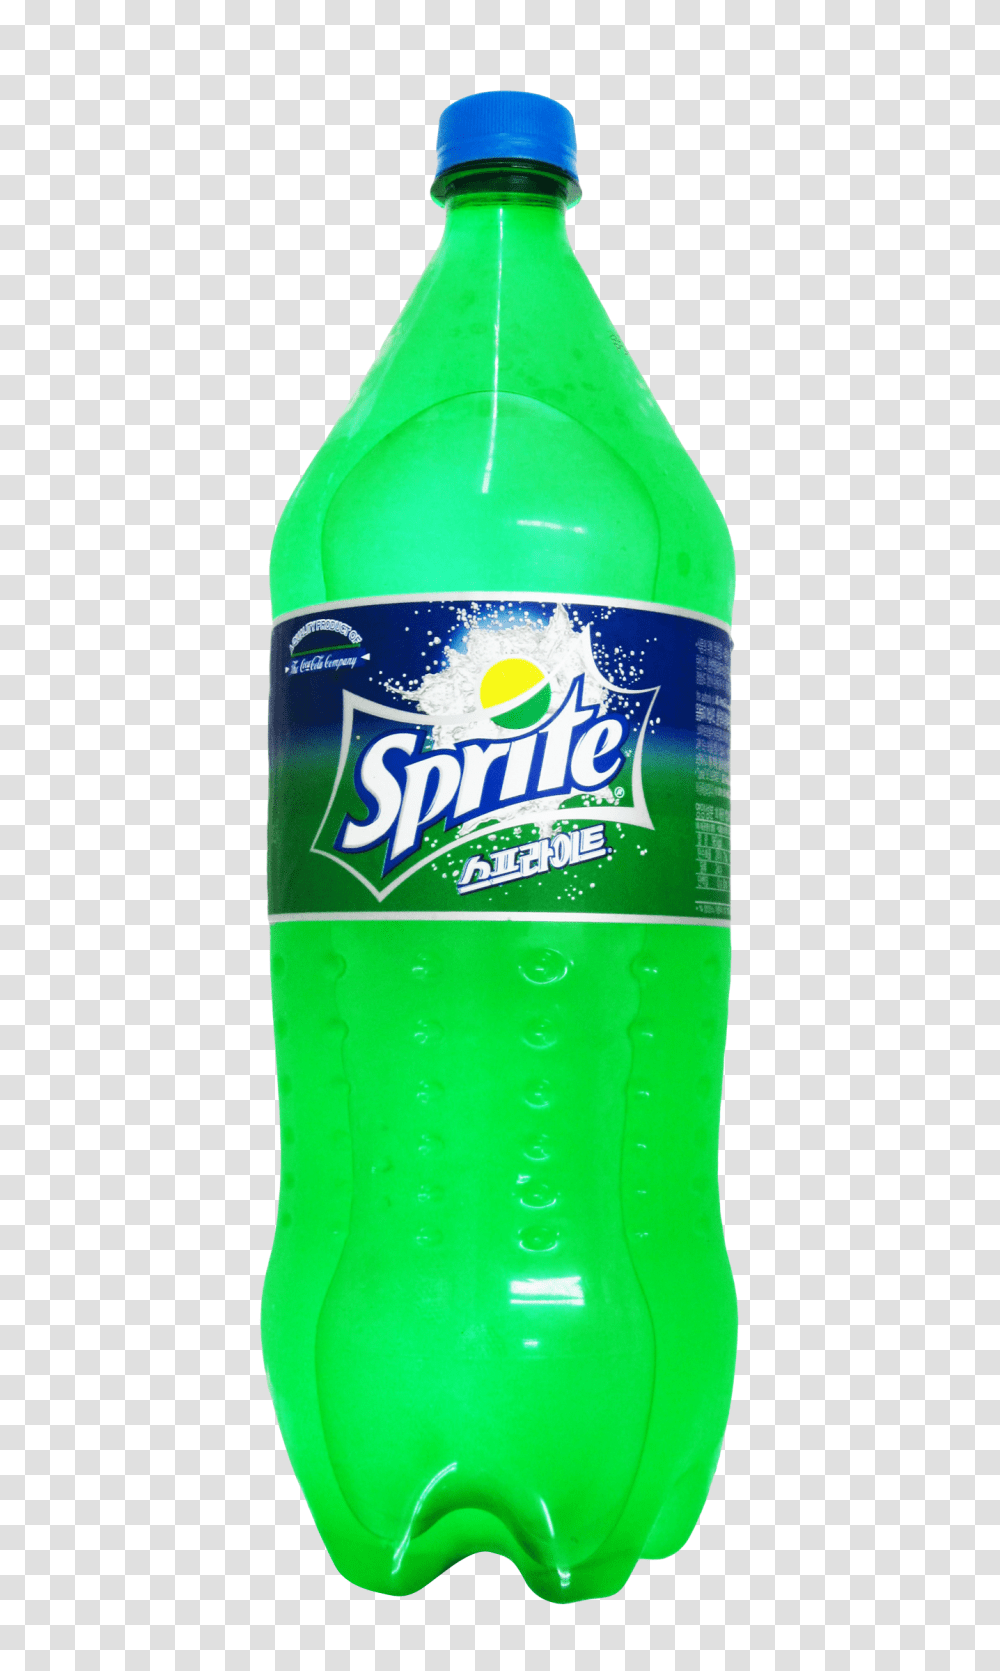 Sprite Bottle Image, Drink, Soda, Beverage, Pop Bottle Transparent Png